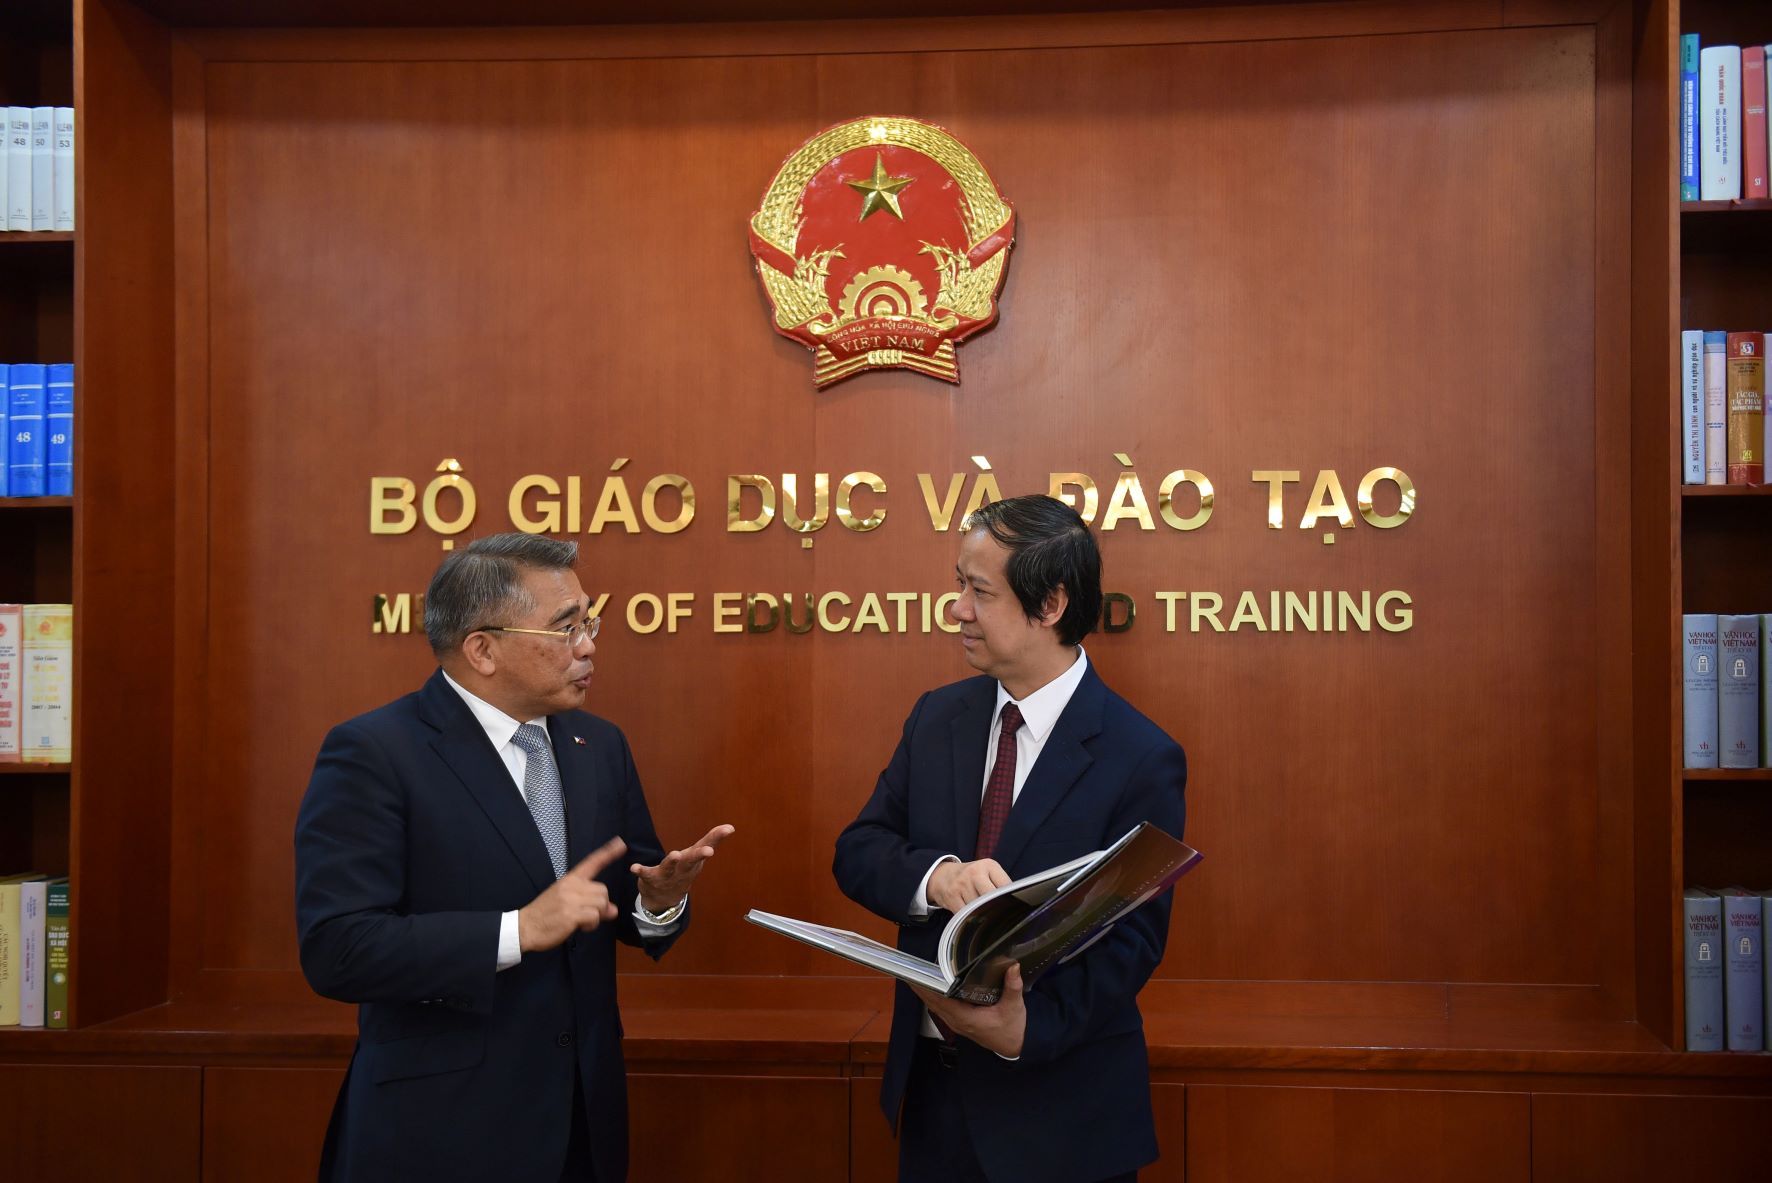 Bộ trưởng Nguyễn Kim Sơn và ngài Meynardo Los Banos Montealegre trao đổi tại buổi tiếp.